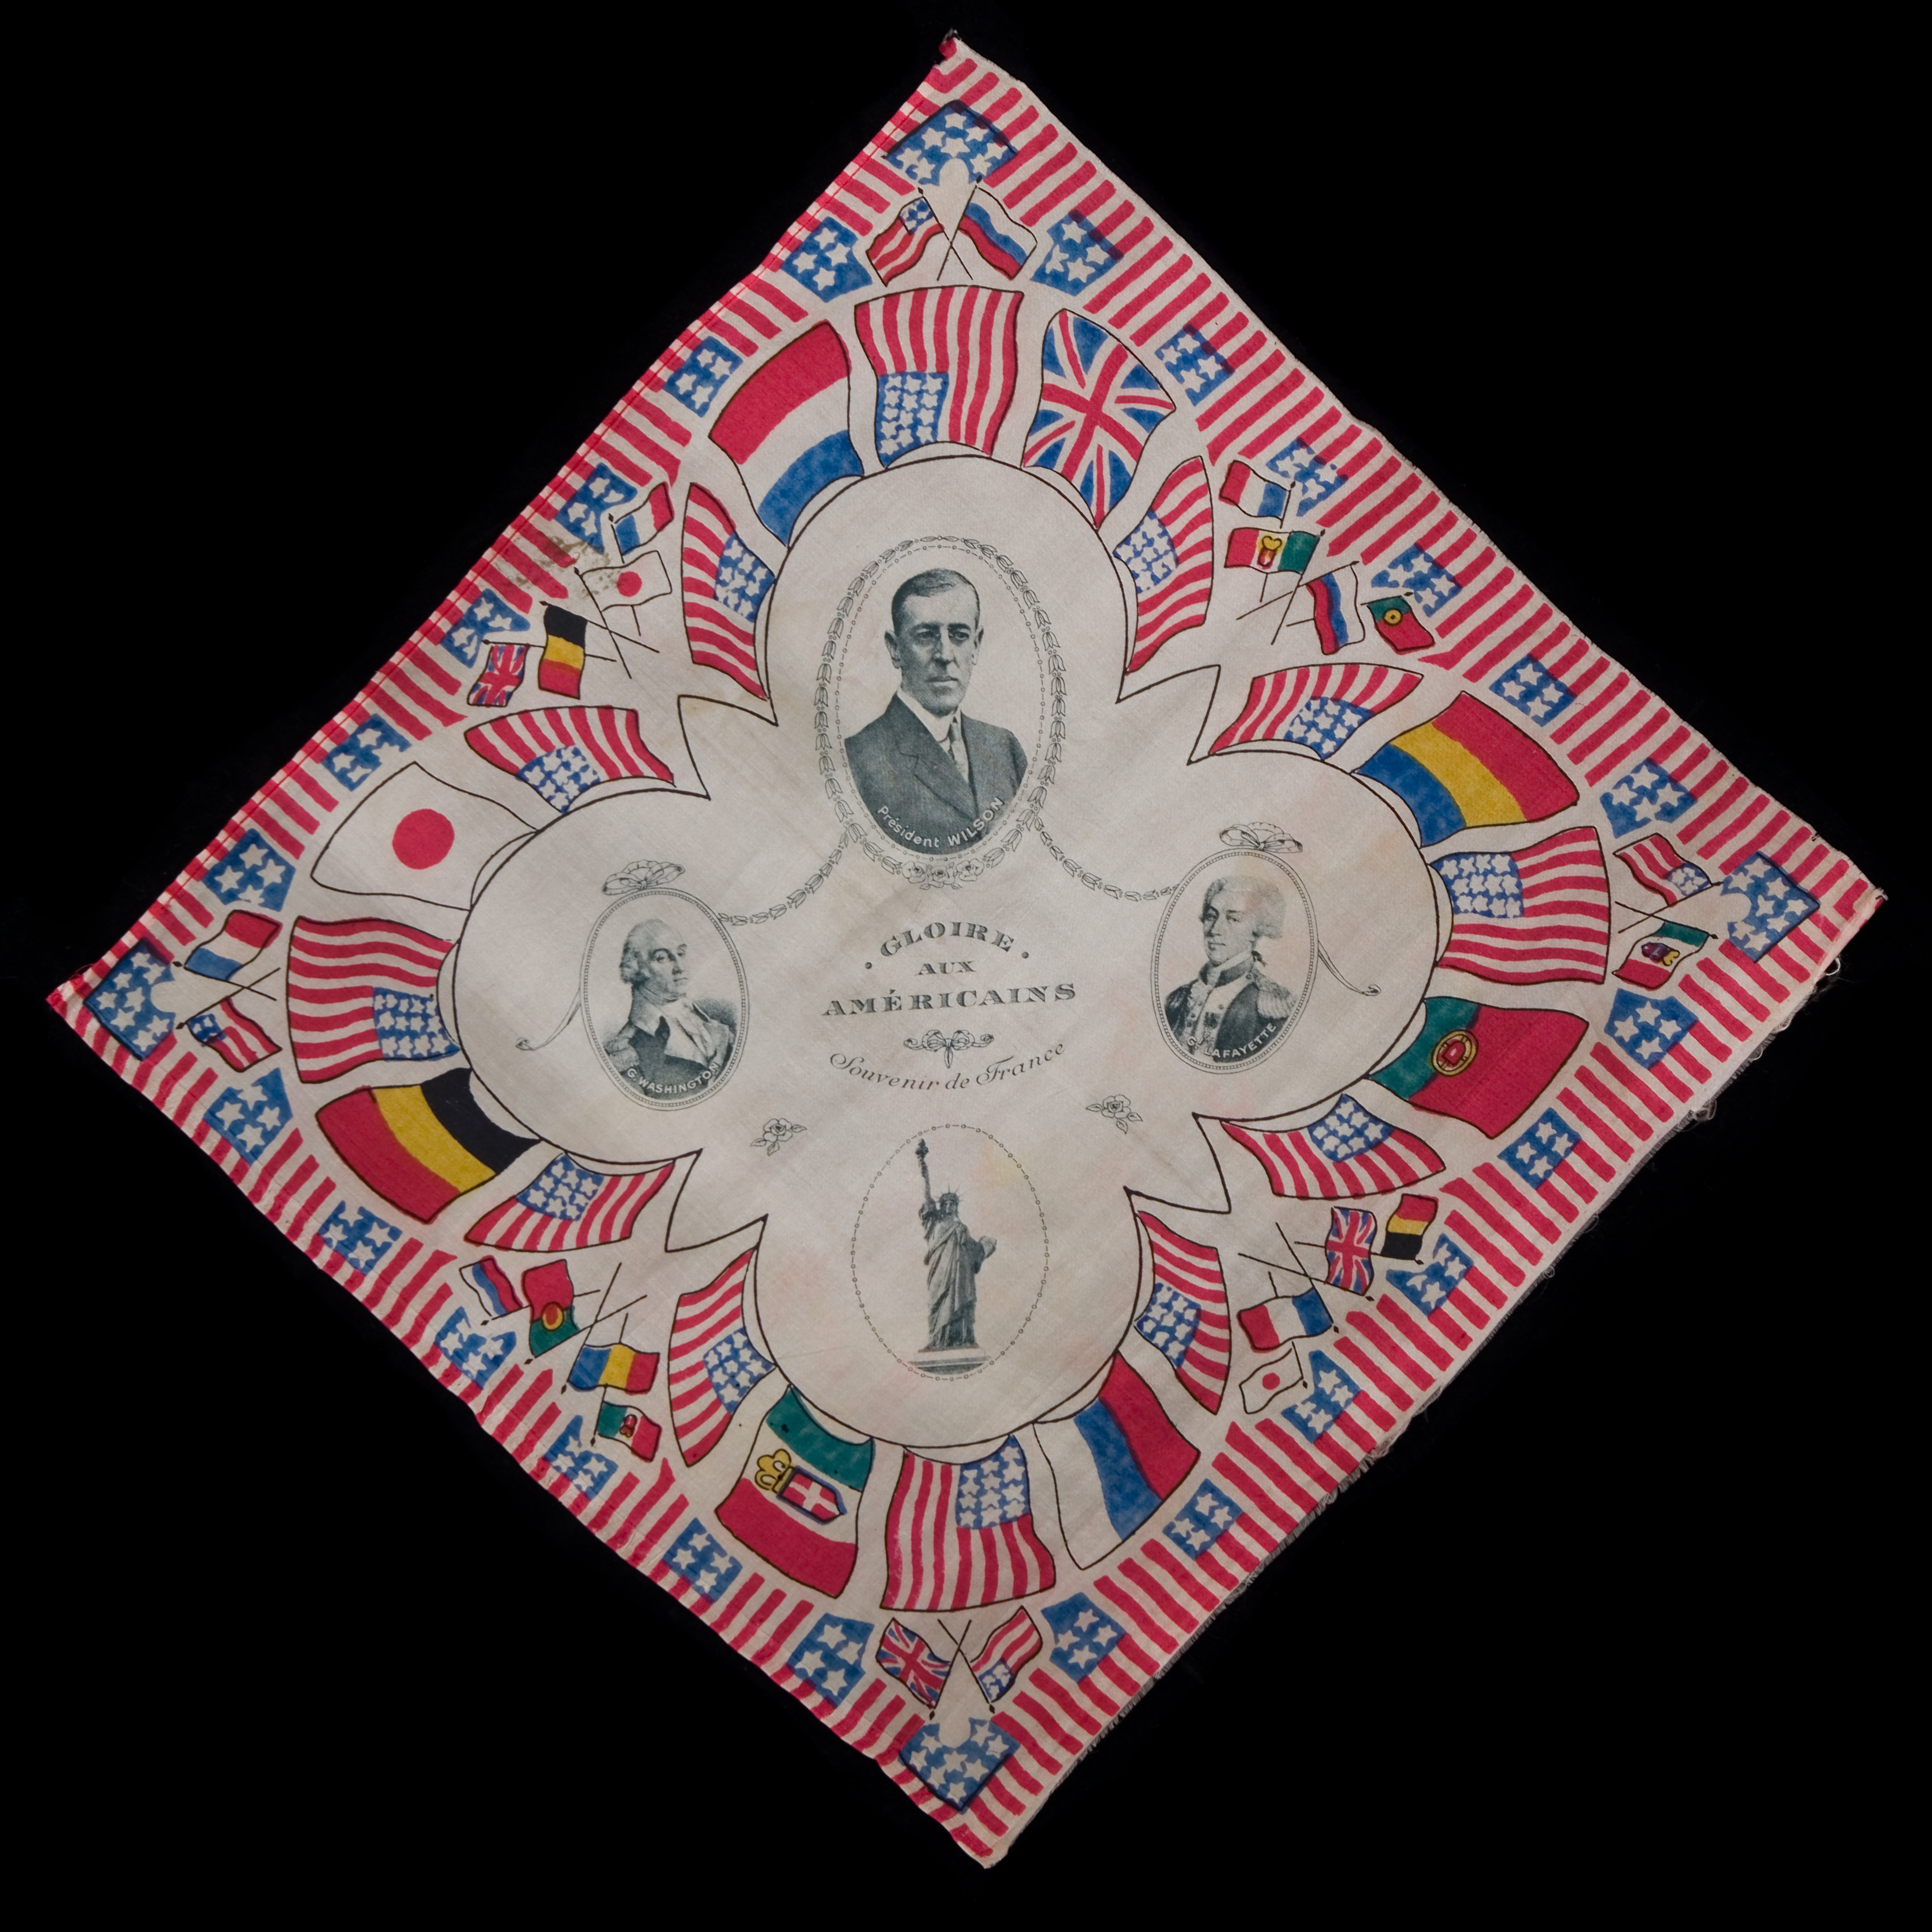 World War I commemorative handkerchief, ca. 1918